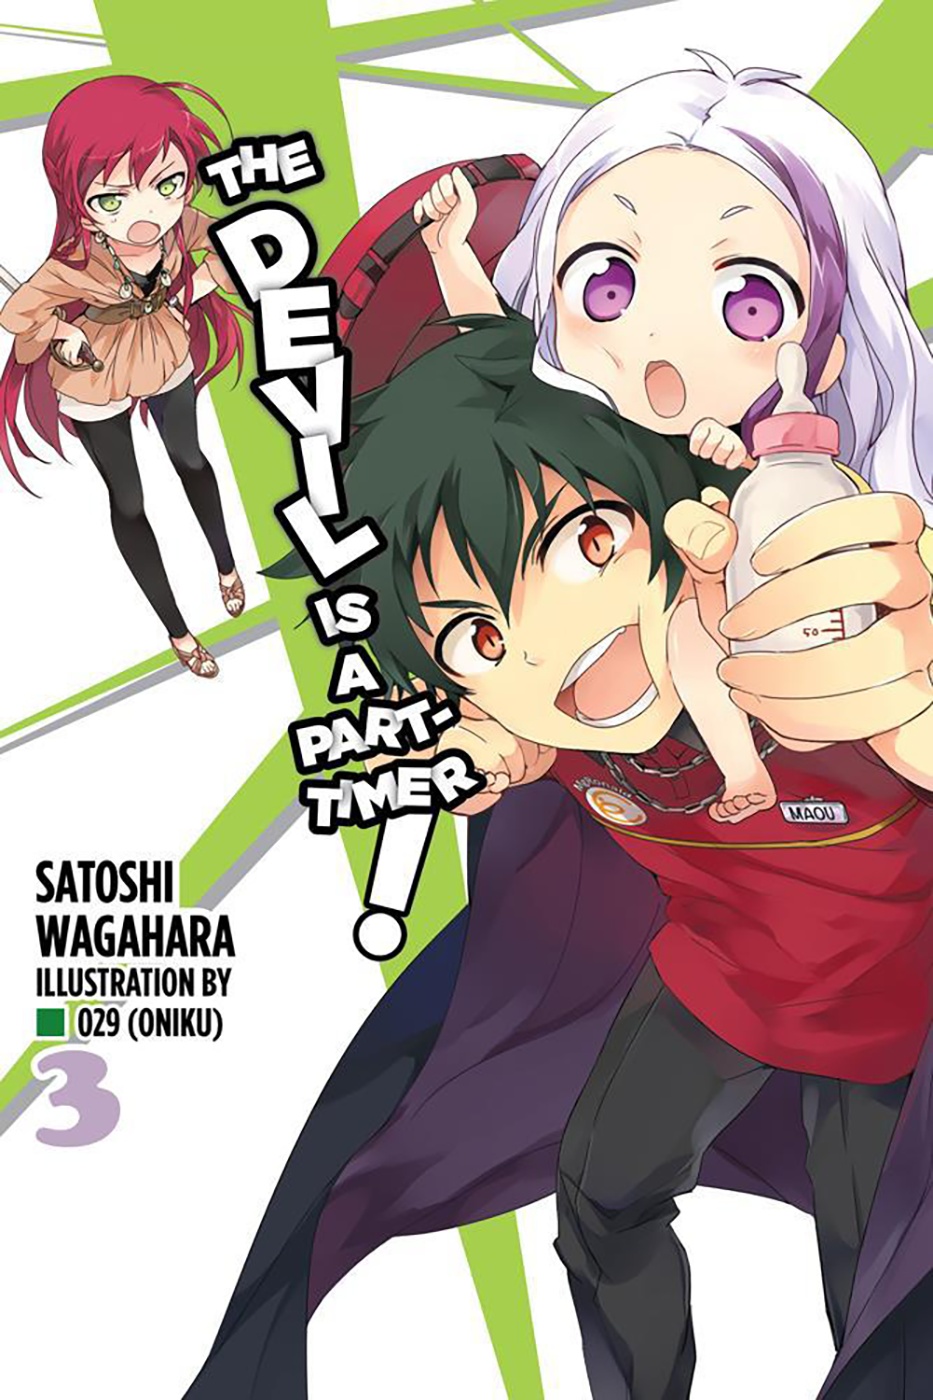 Hataraku Maou-sama terá 2° temporada - Manga Livre RS